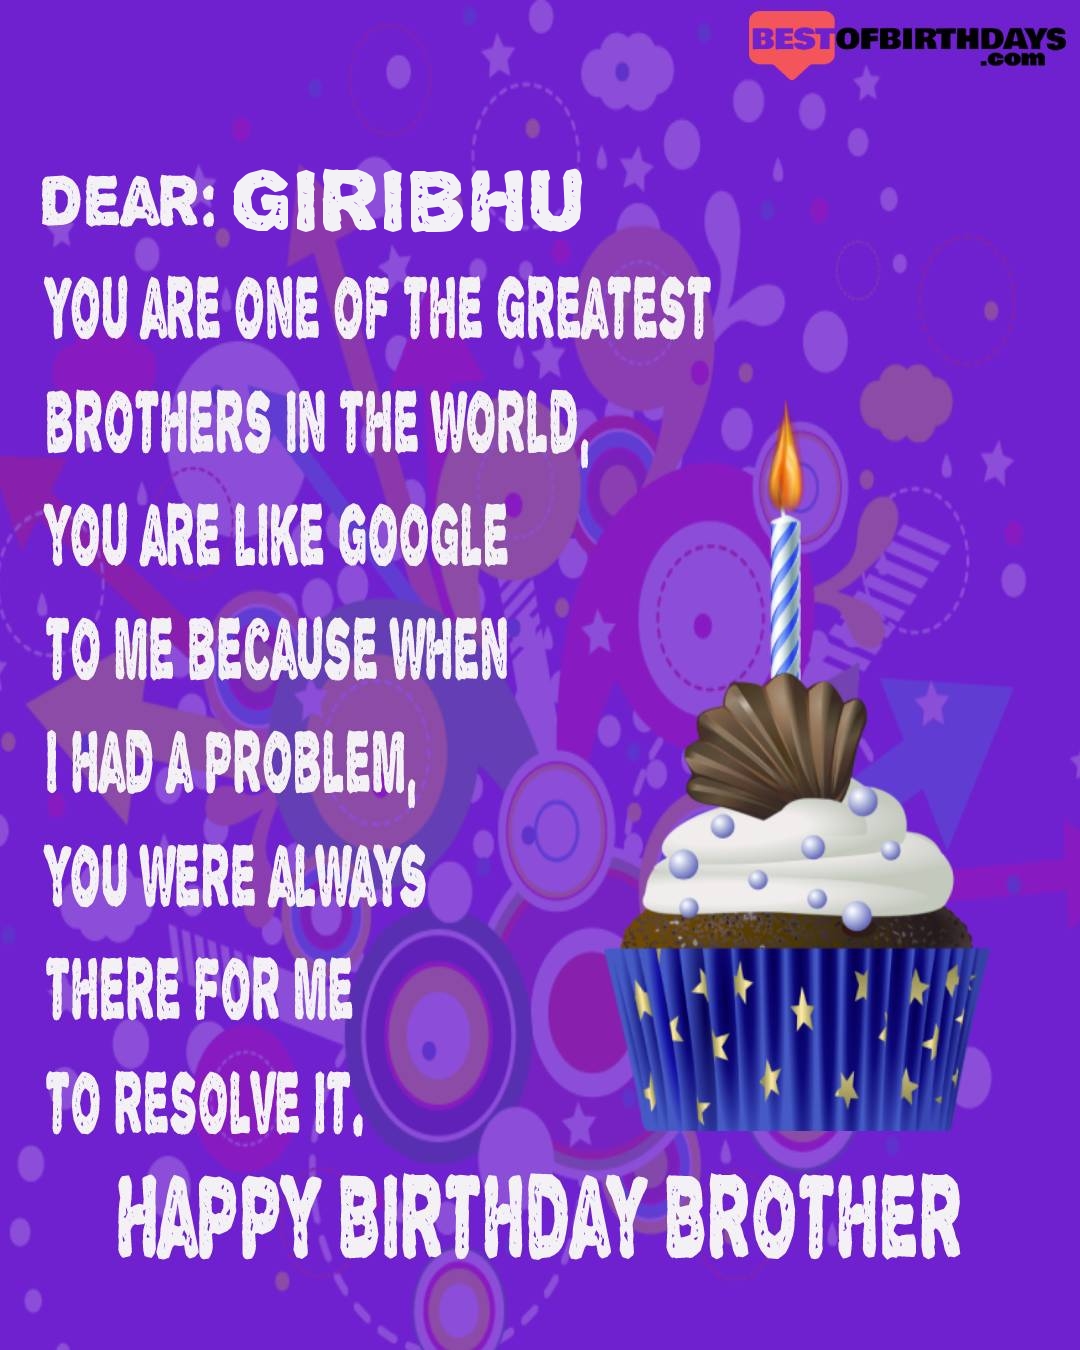 Happy birthday giribhu bhai brother bro